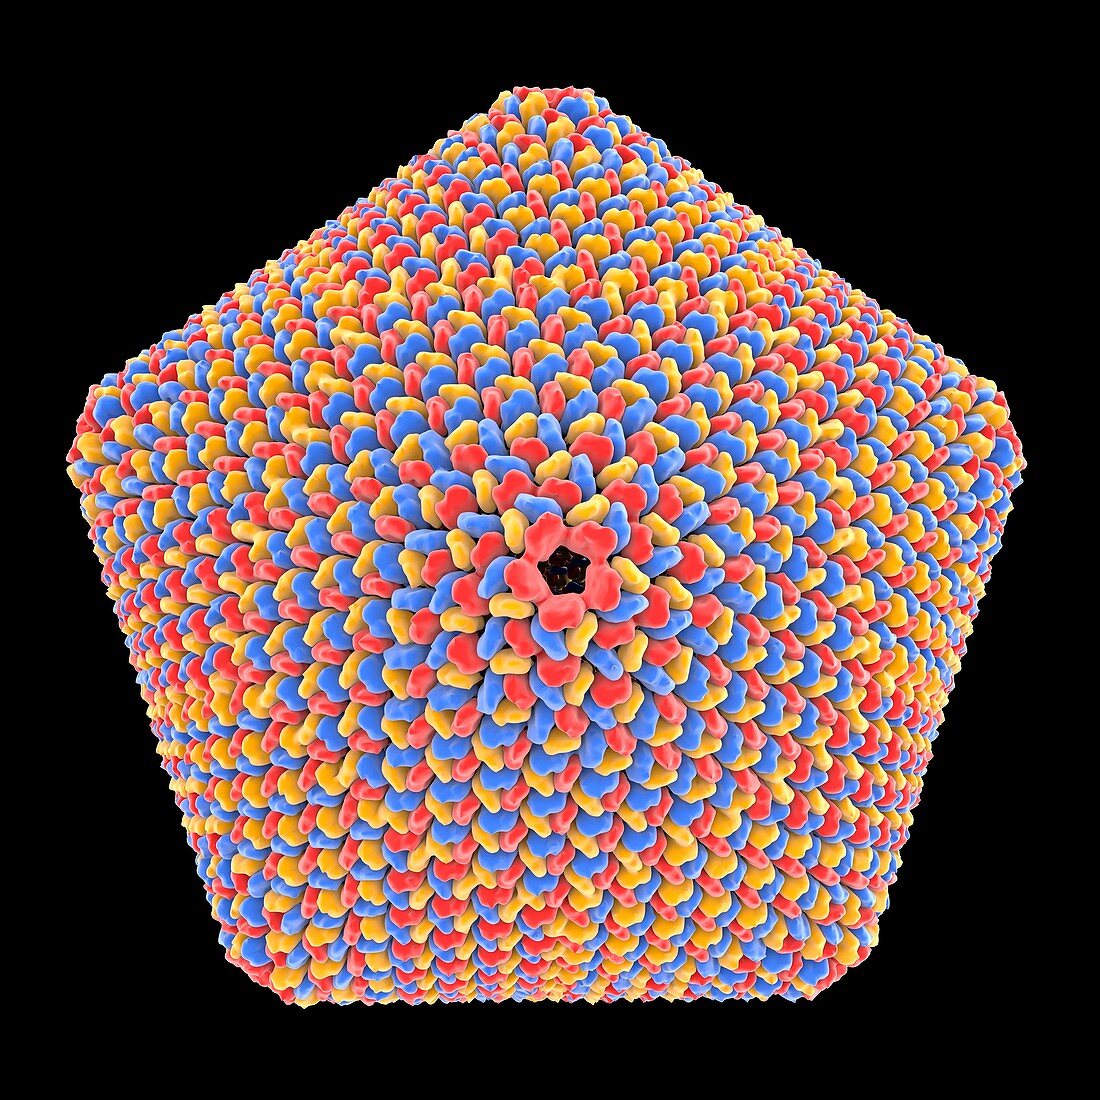 Icosahedral virus capsid, illustration